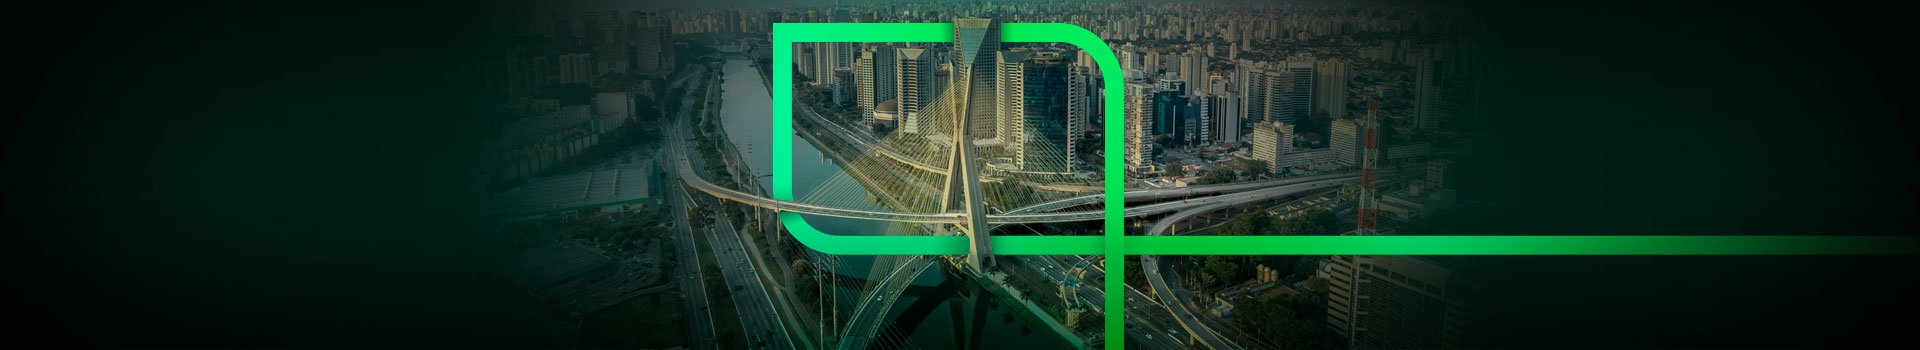 Imagem mostra a Ponte Estaiada representando São Paulo